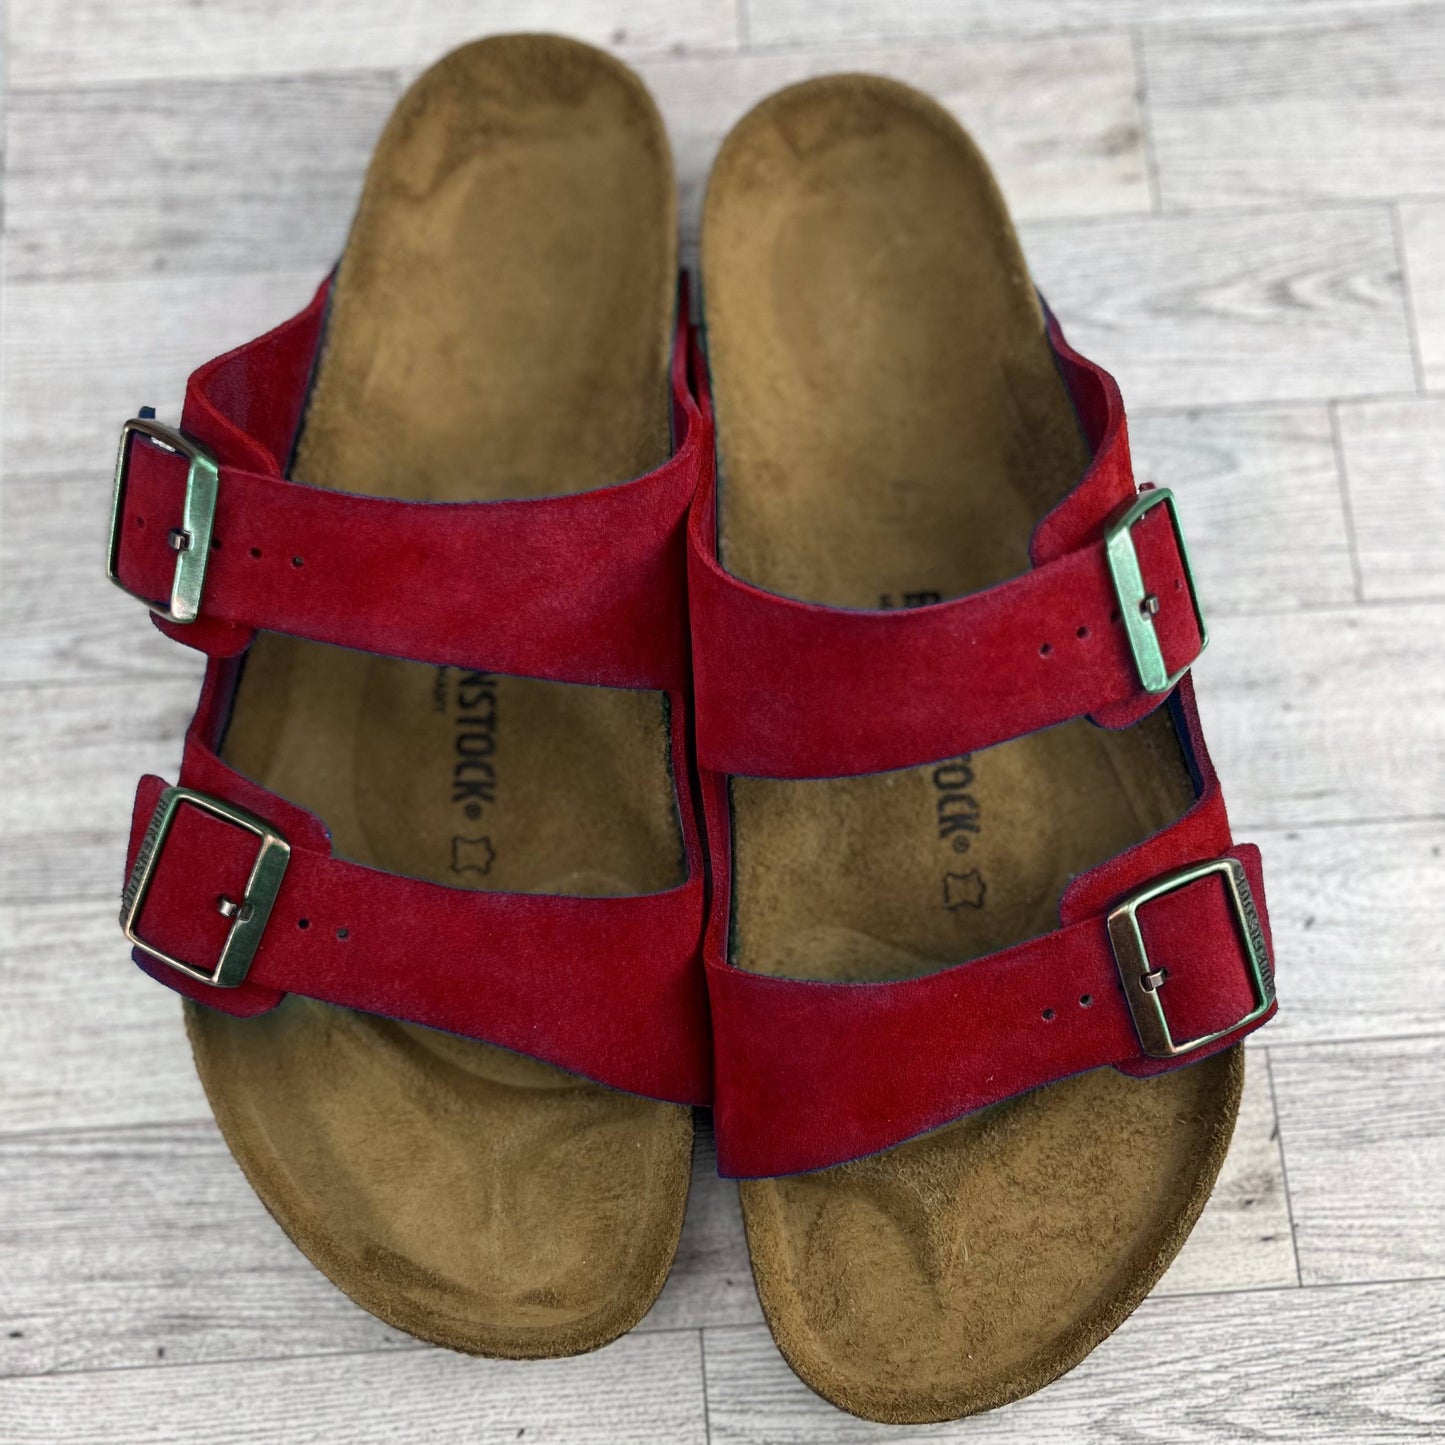 Red Arizona Birkenstock Sandals on grey wood floor